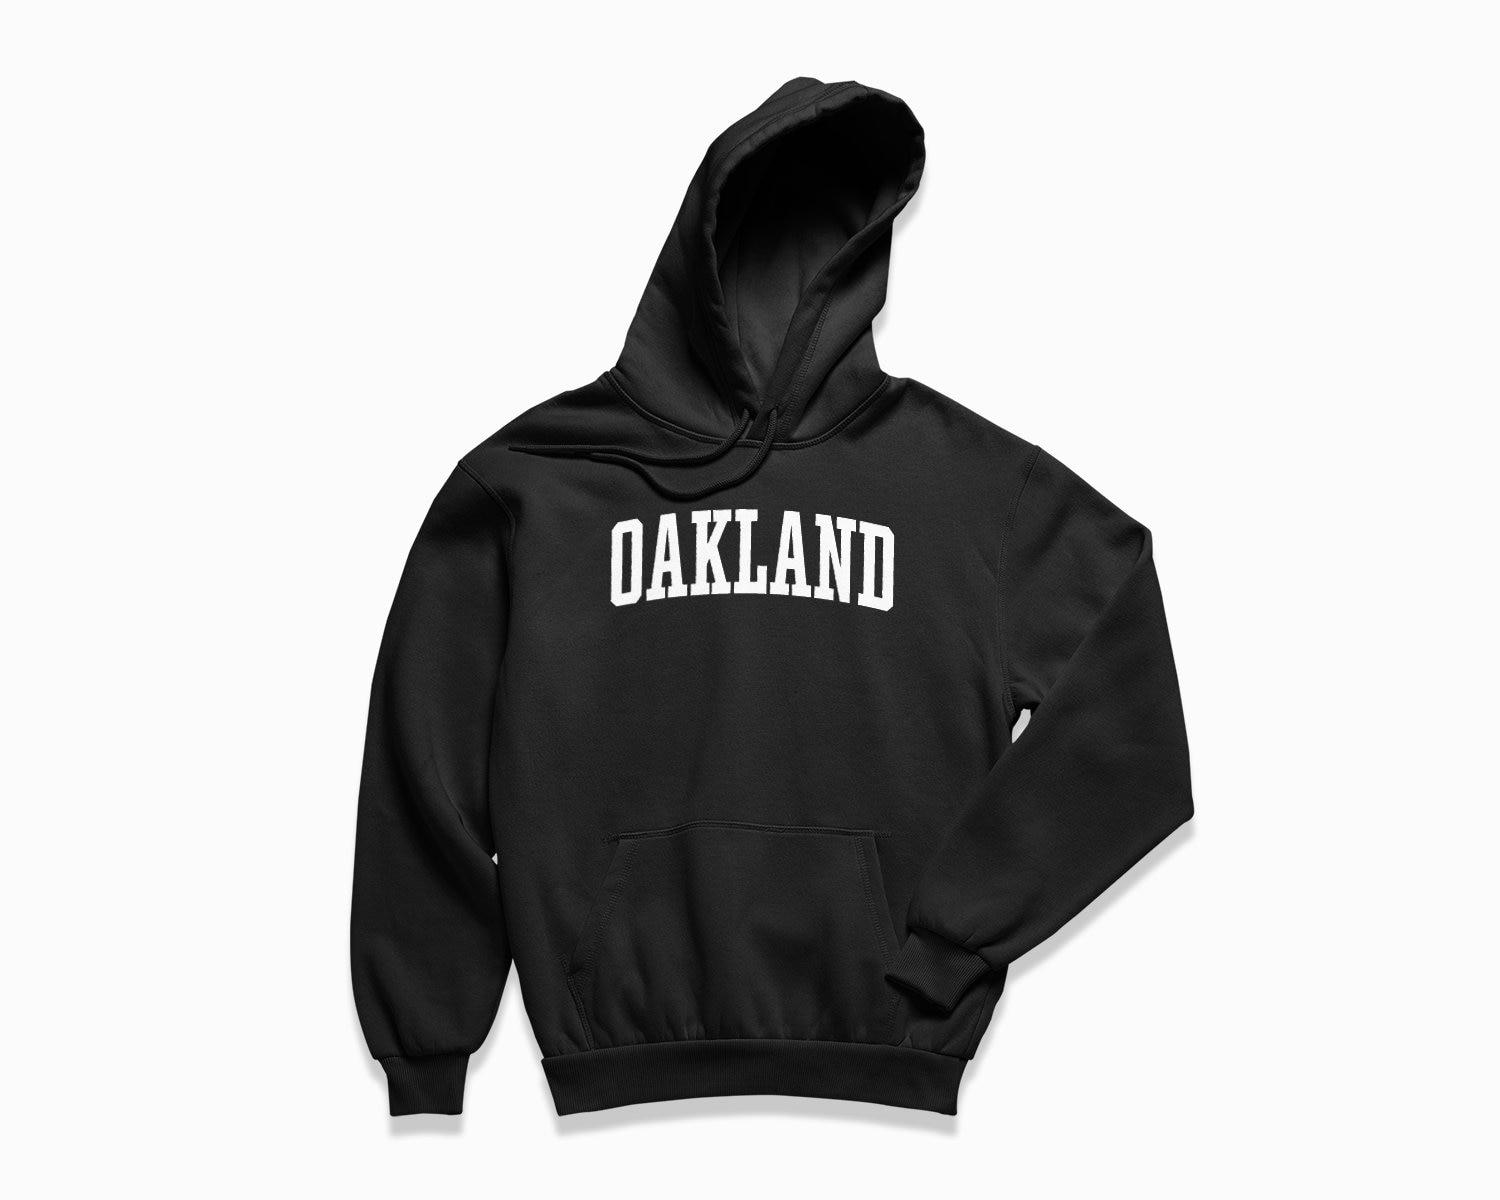 Oakland Hoodie California Kapuzenpullover/College Style Pullover Vintage Inspirierter von HappyNewVintageShop